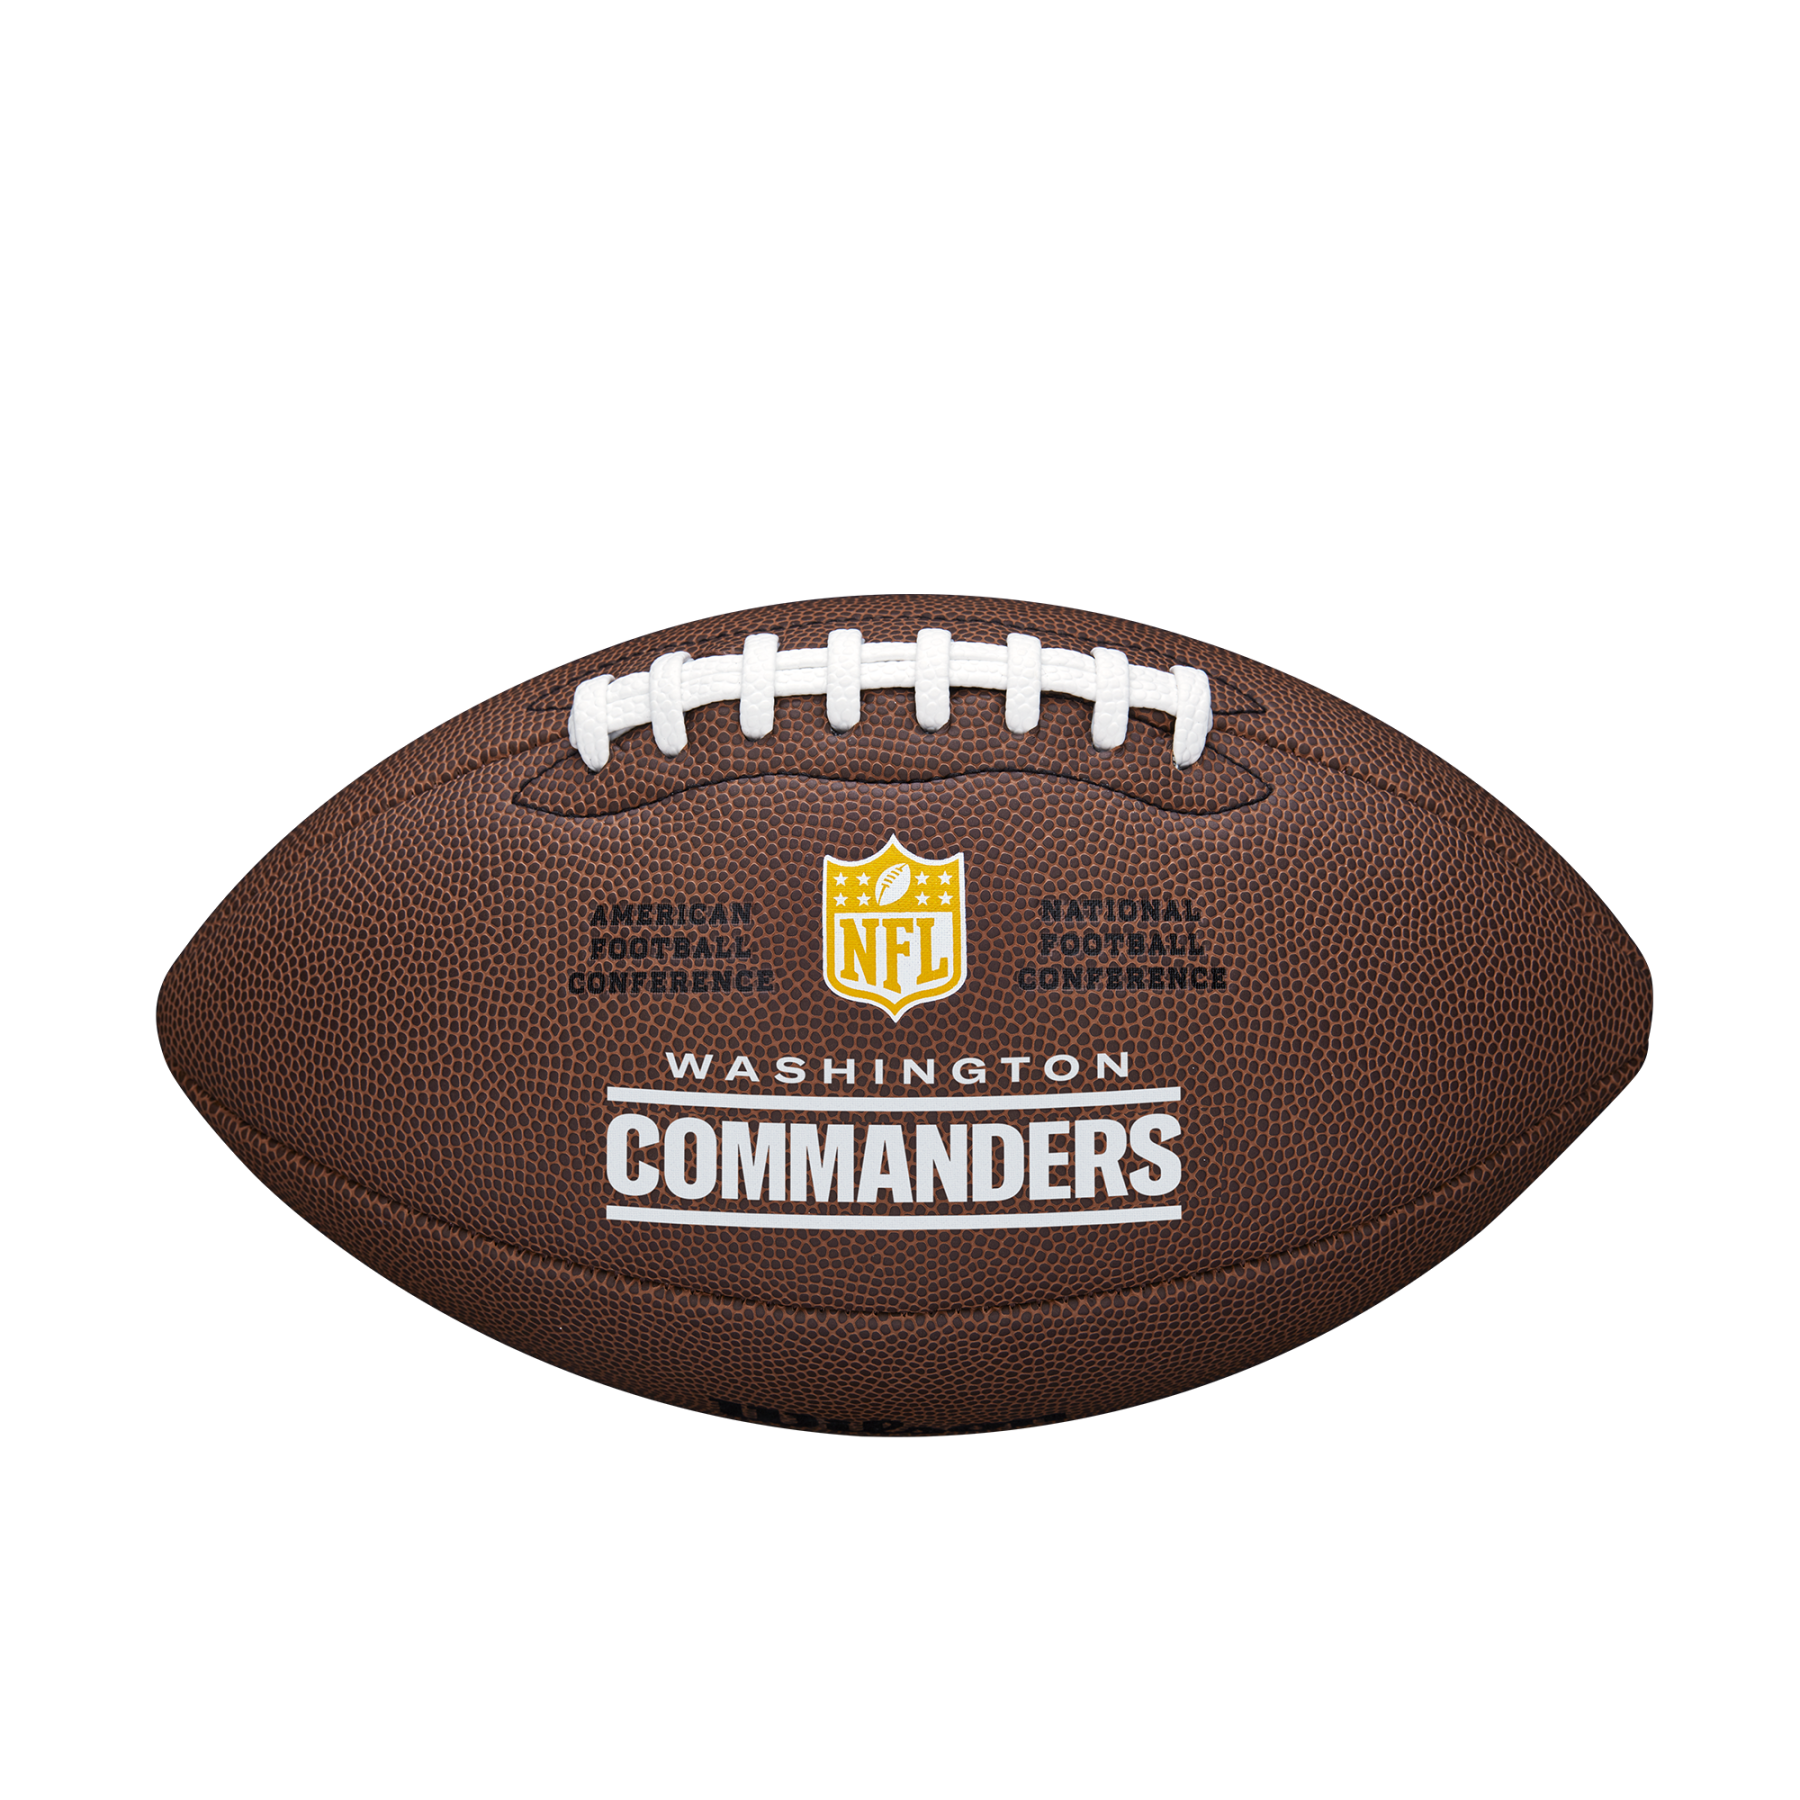 American Football Wilson Redskins NFL Licensed